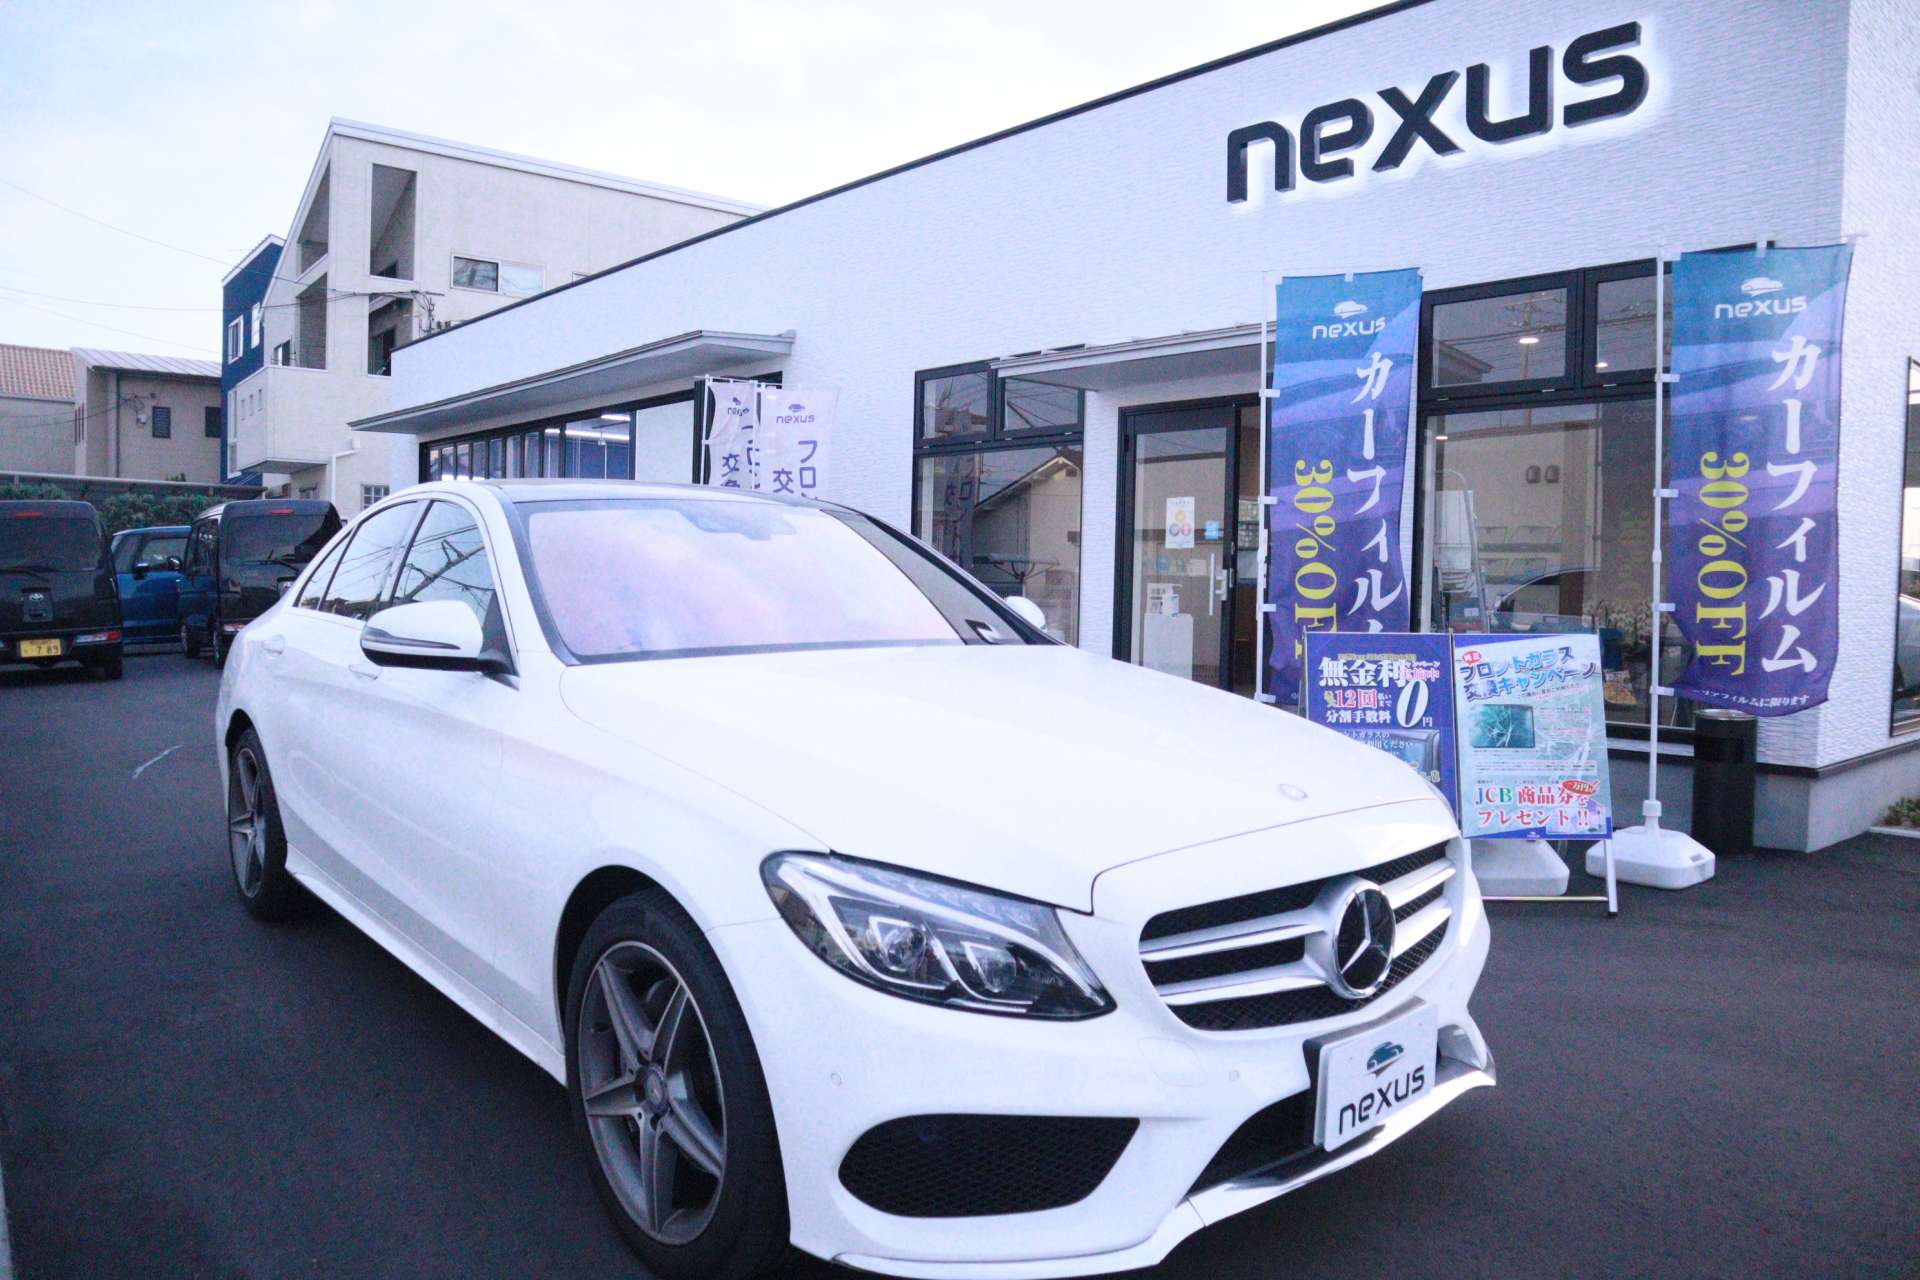 ベンツ フロントガラスゴーストフィルム施工 Nexus株式会社 地元岡山市からお車を愛する方に向けて様々な情報を発信するブログを運営中